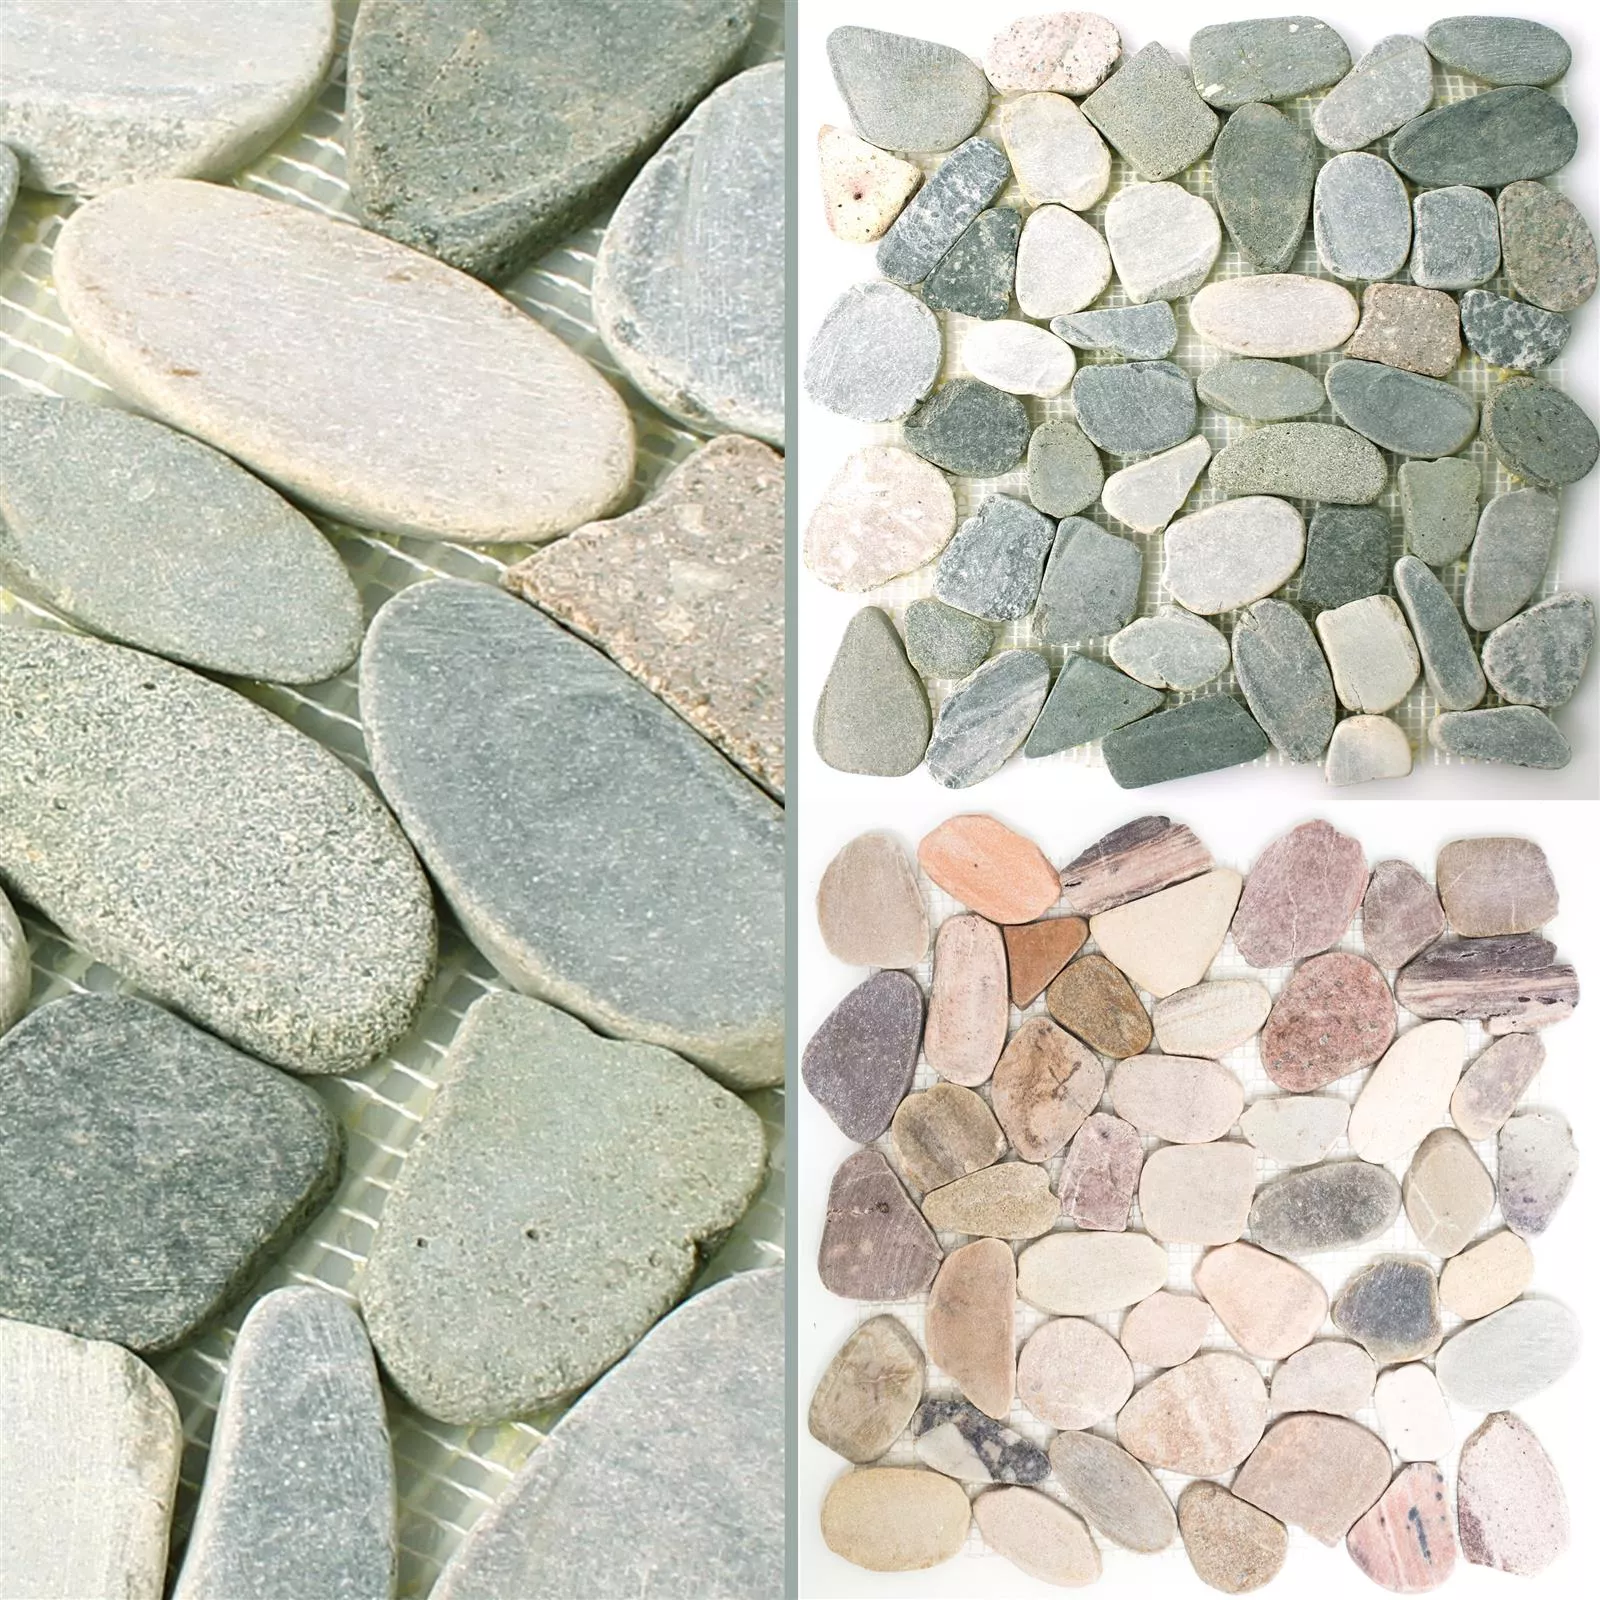 Sample Mosaic Tiles River Pebbles Natural Stone Kos